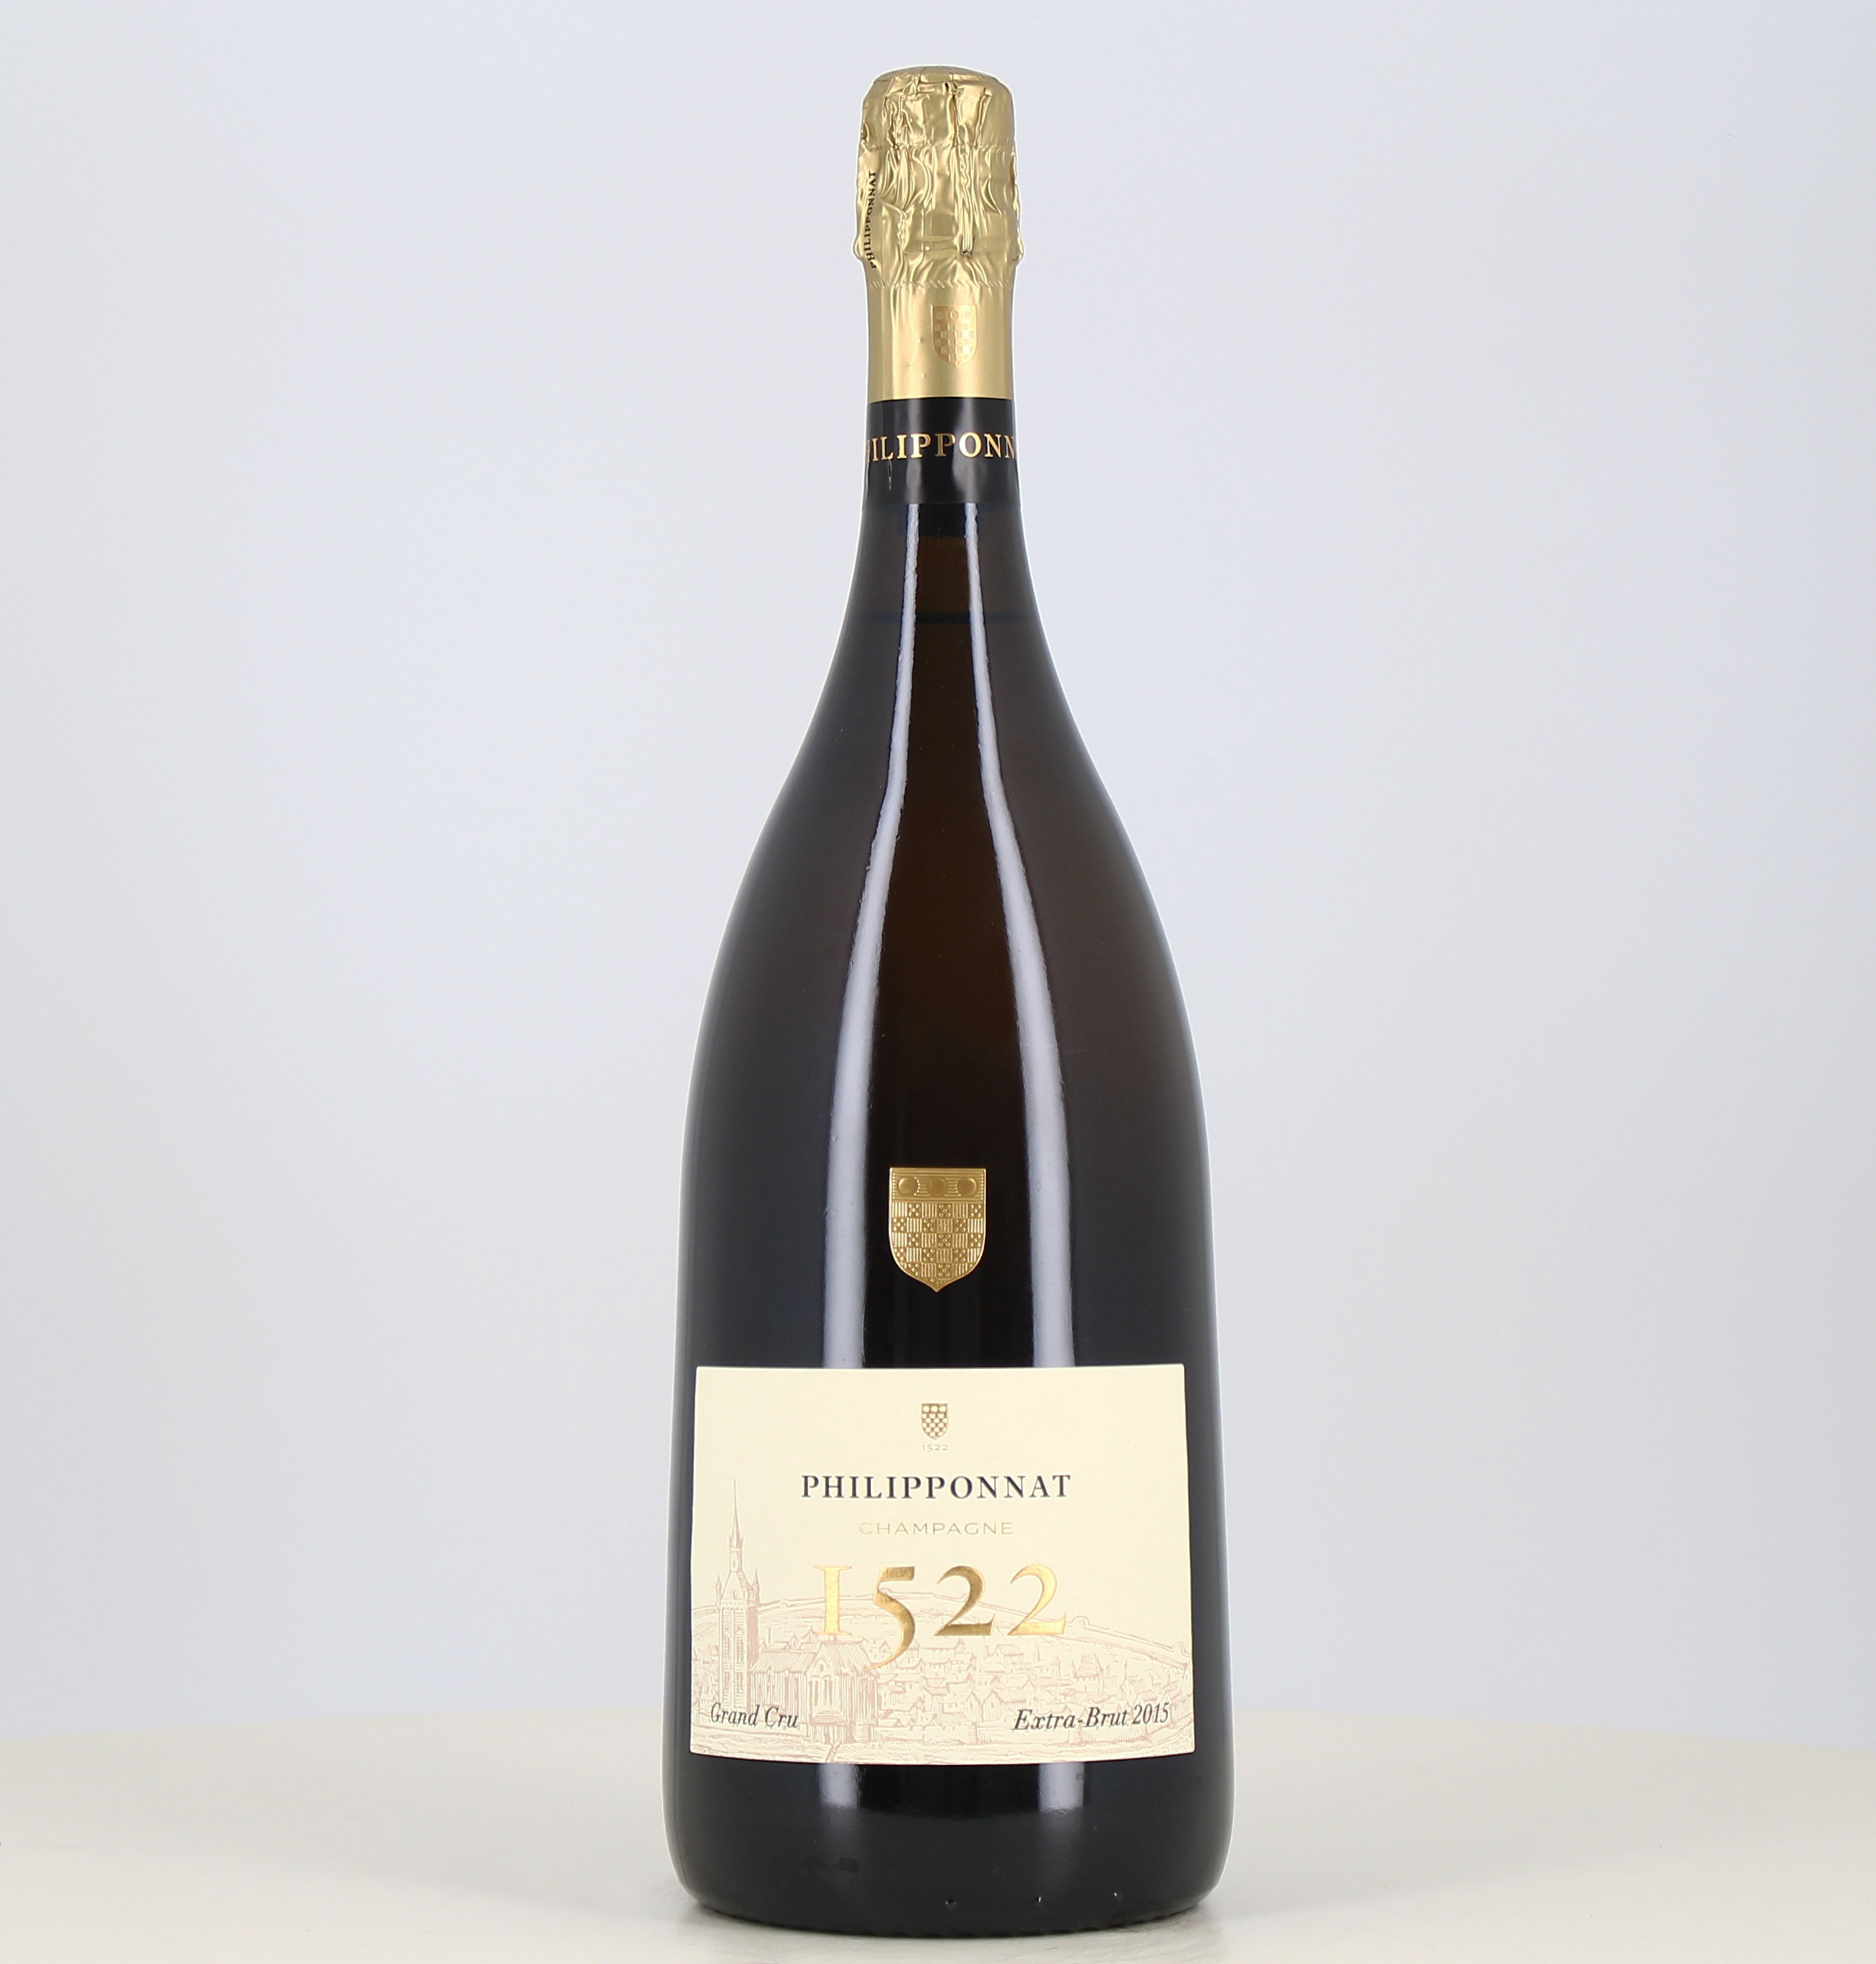 Magnum Champagne grand cru Cuvée 1522 Millesime Philipponnat 2015

Magnum di Champagne grand cru Cuvée 1522 Millesime Philipponn 